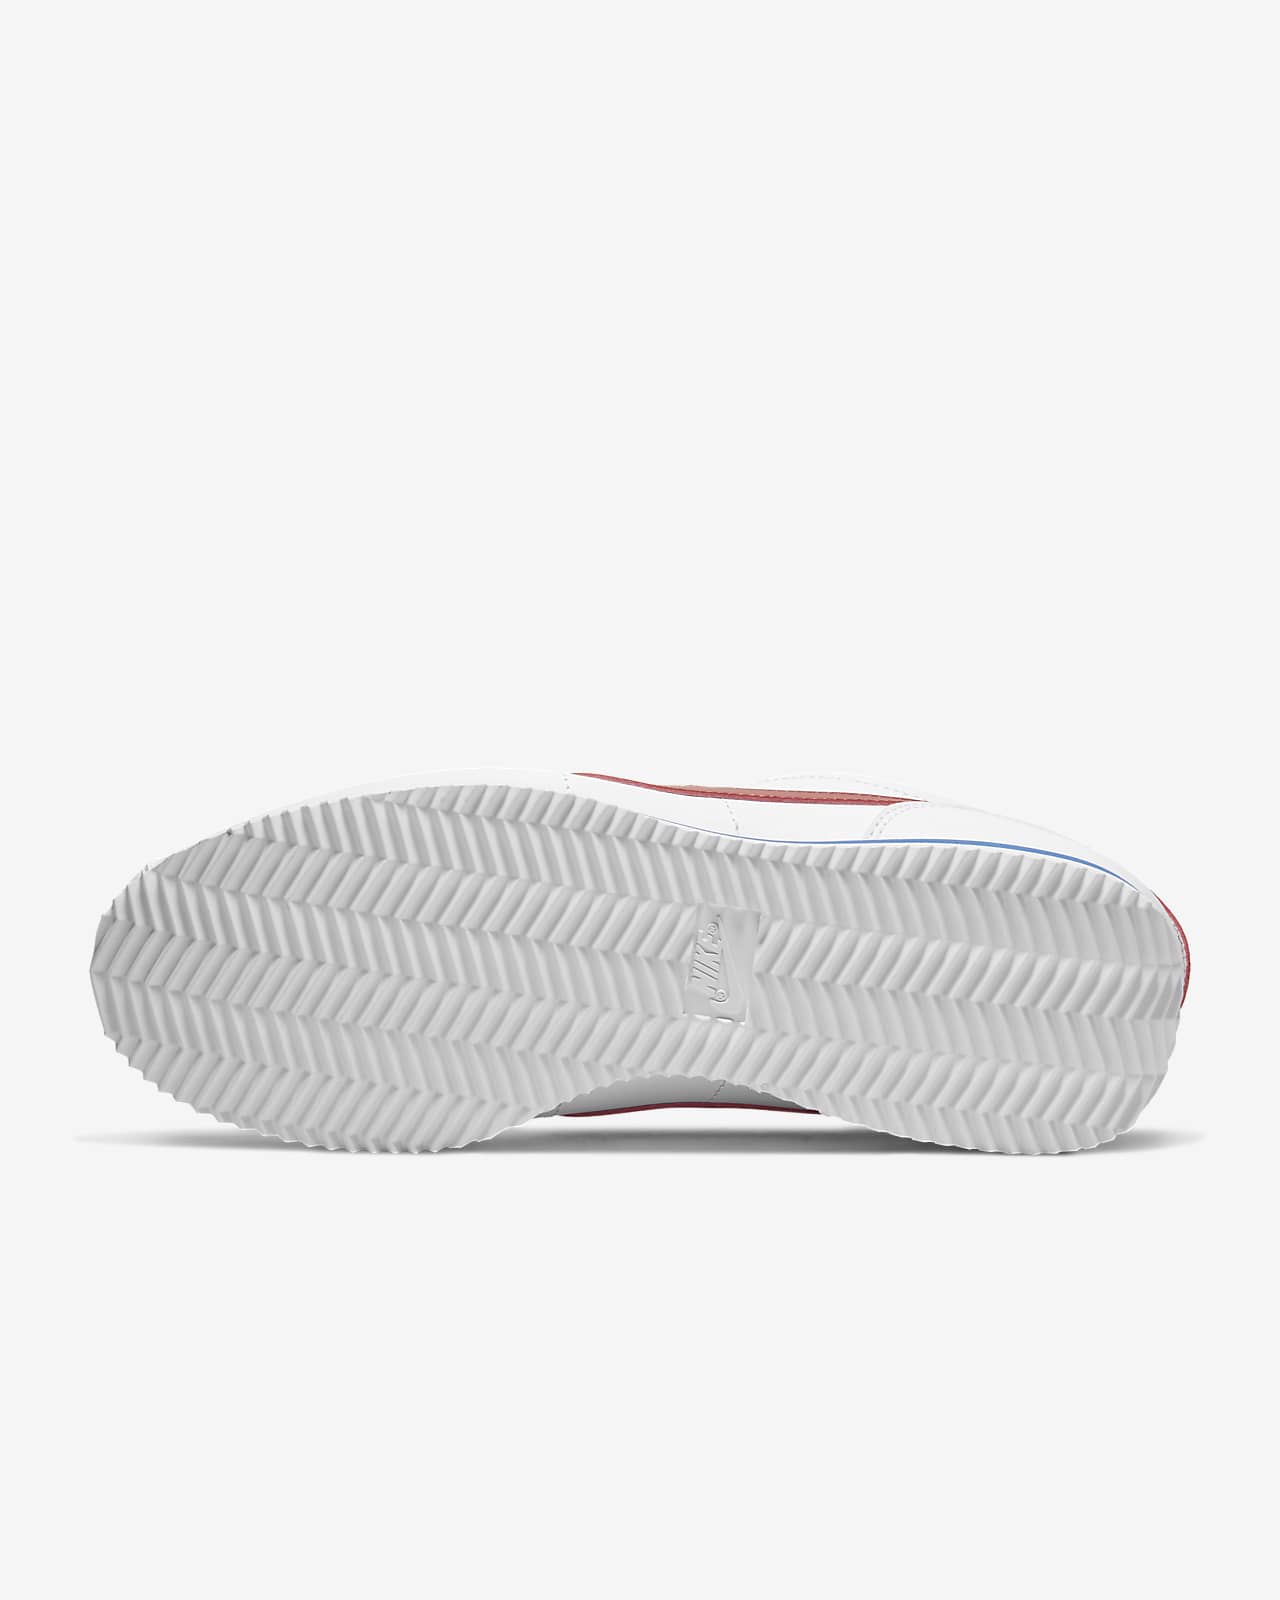 Nike Cortez Basic Shoe. Nike LU